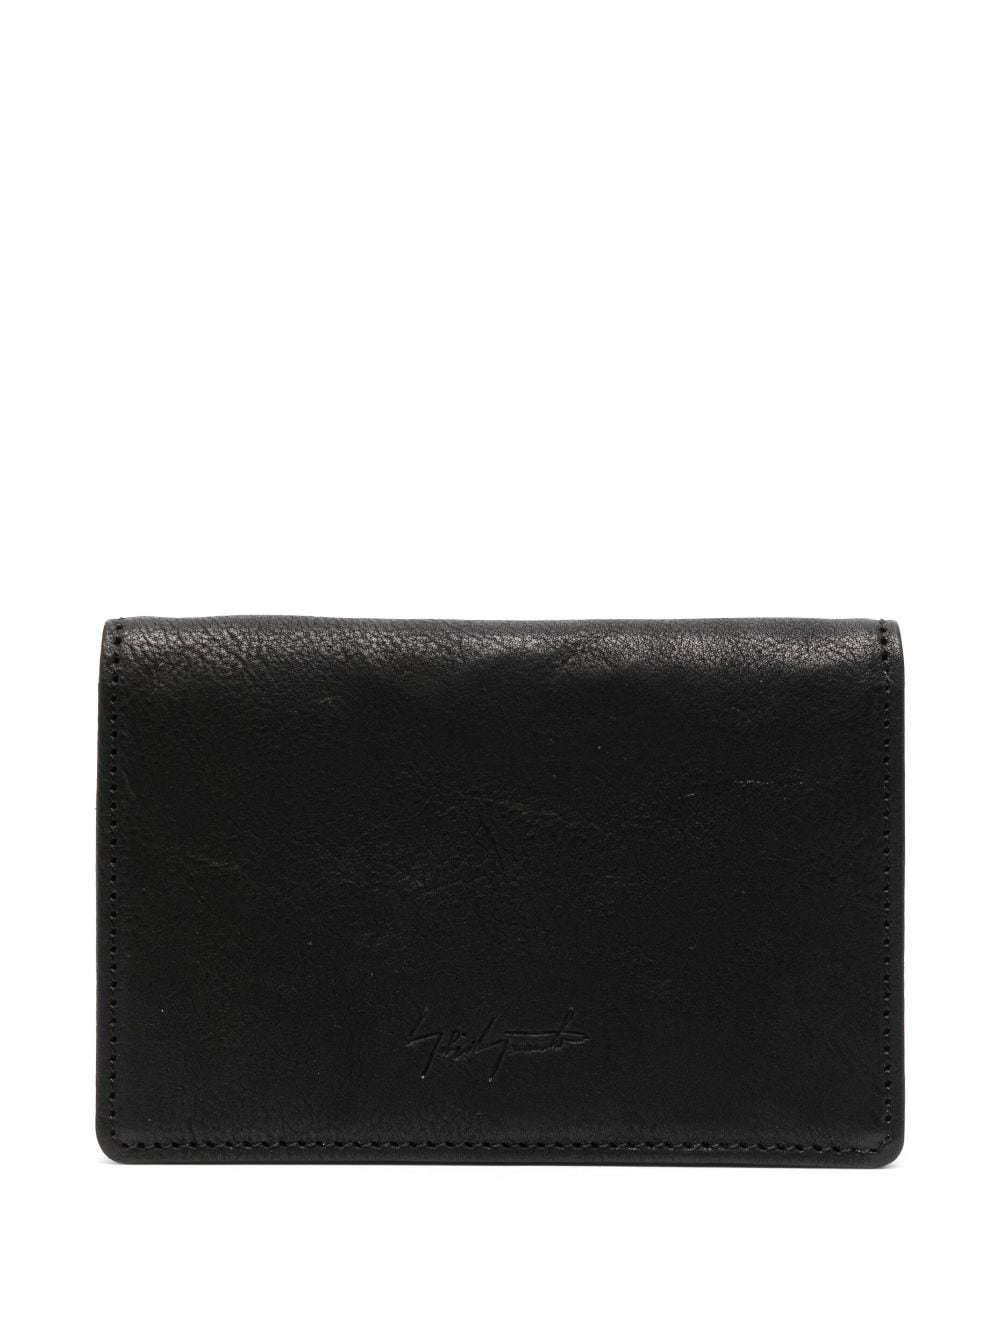 Discord Yohji Yamamoto Bi-fold Leather Wallet In Black